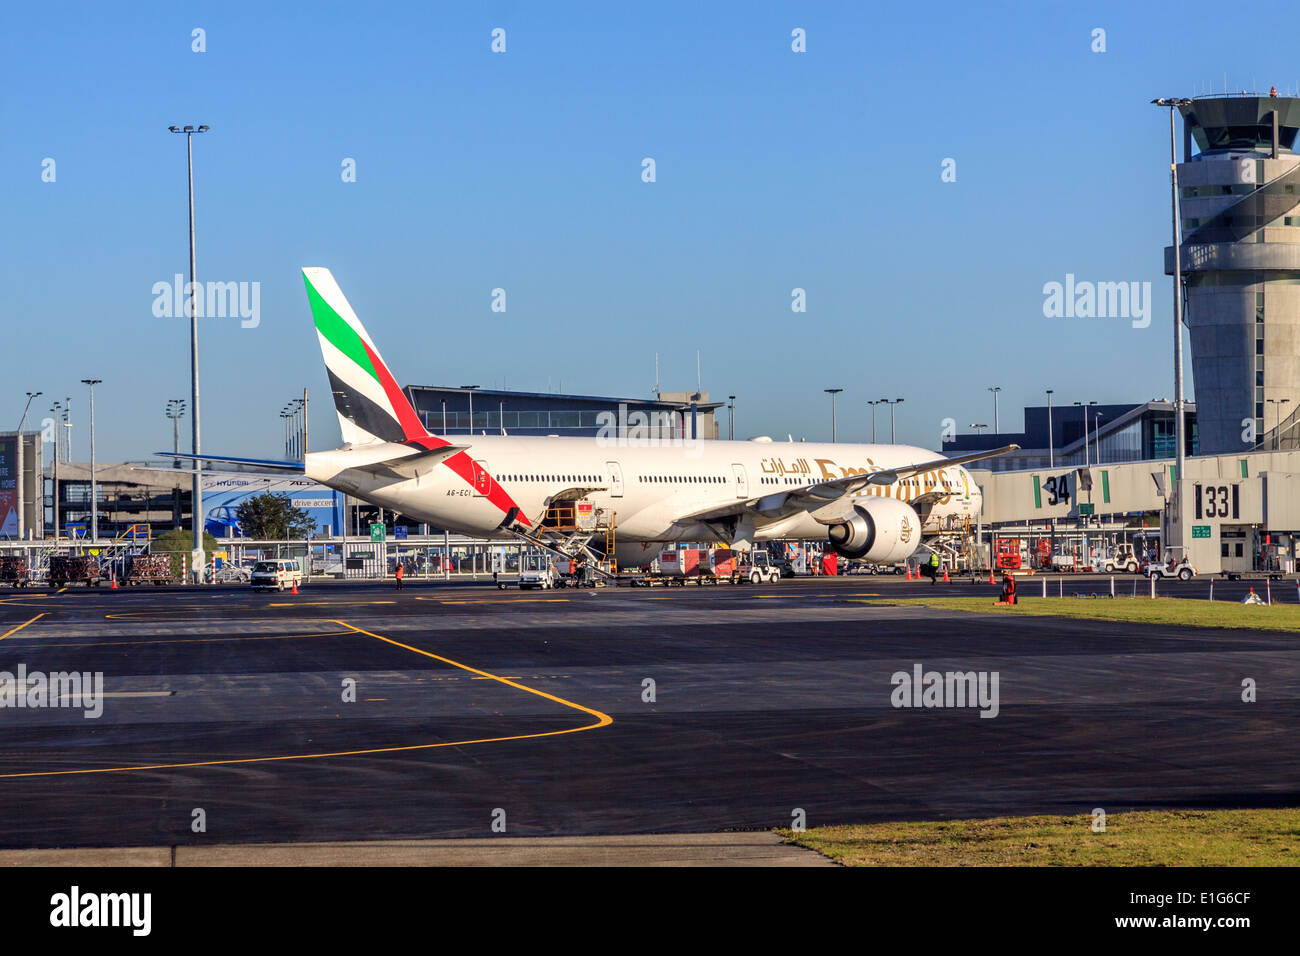 Emirates Airlines Boeing B777 Twin Jet Flugzeug am internationalen Flughafen von Christchurch, Canterbury, Südinsel, Neuseeland Stockfoto